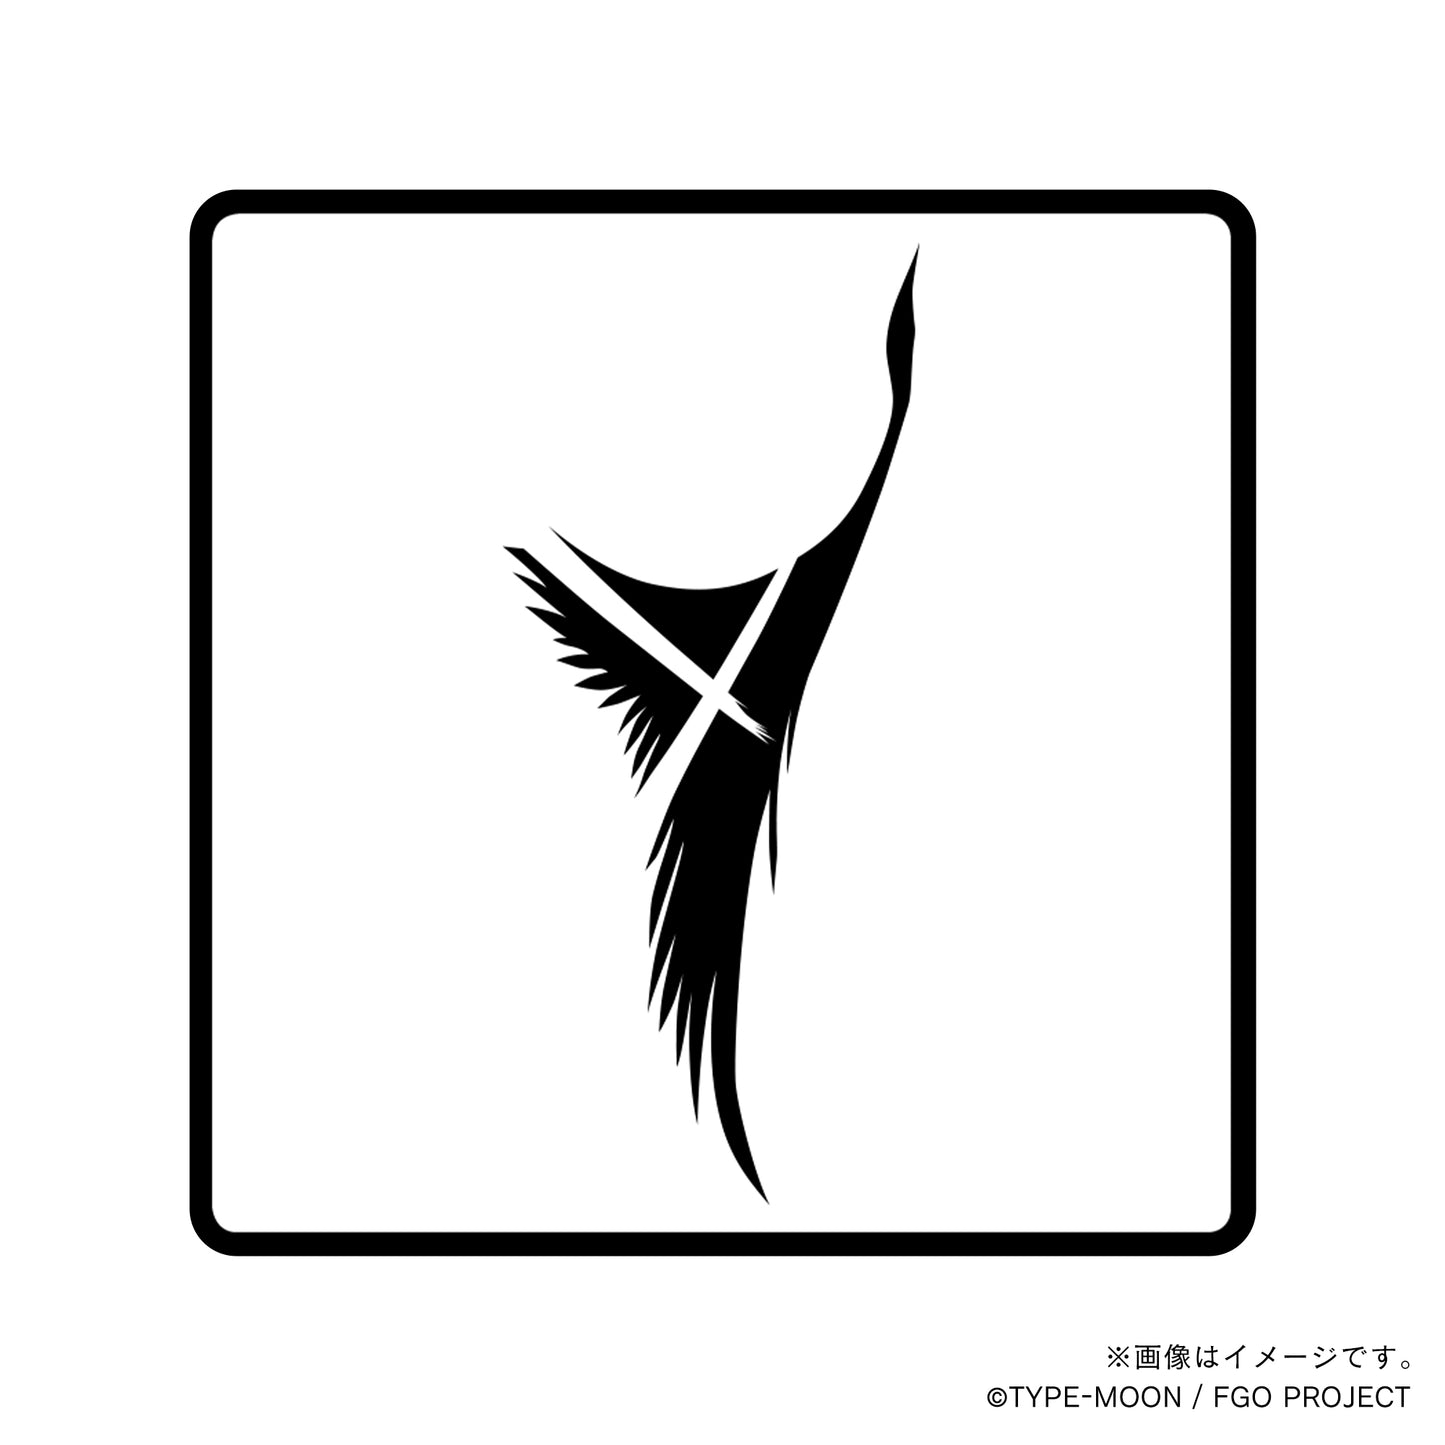 【Fate Grand Order】デイビット・ゼム・ヴォイド・丸印18mm&角印21mm